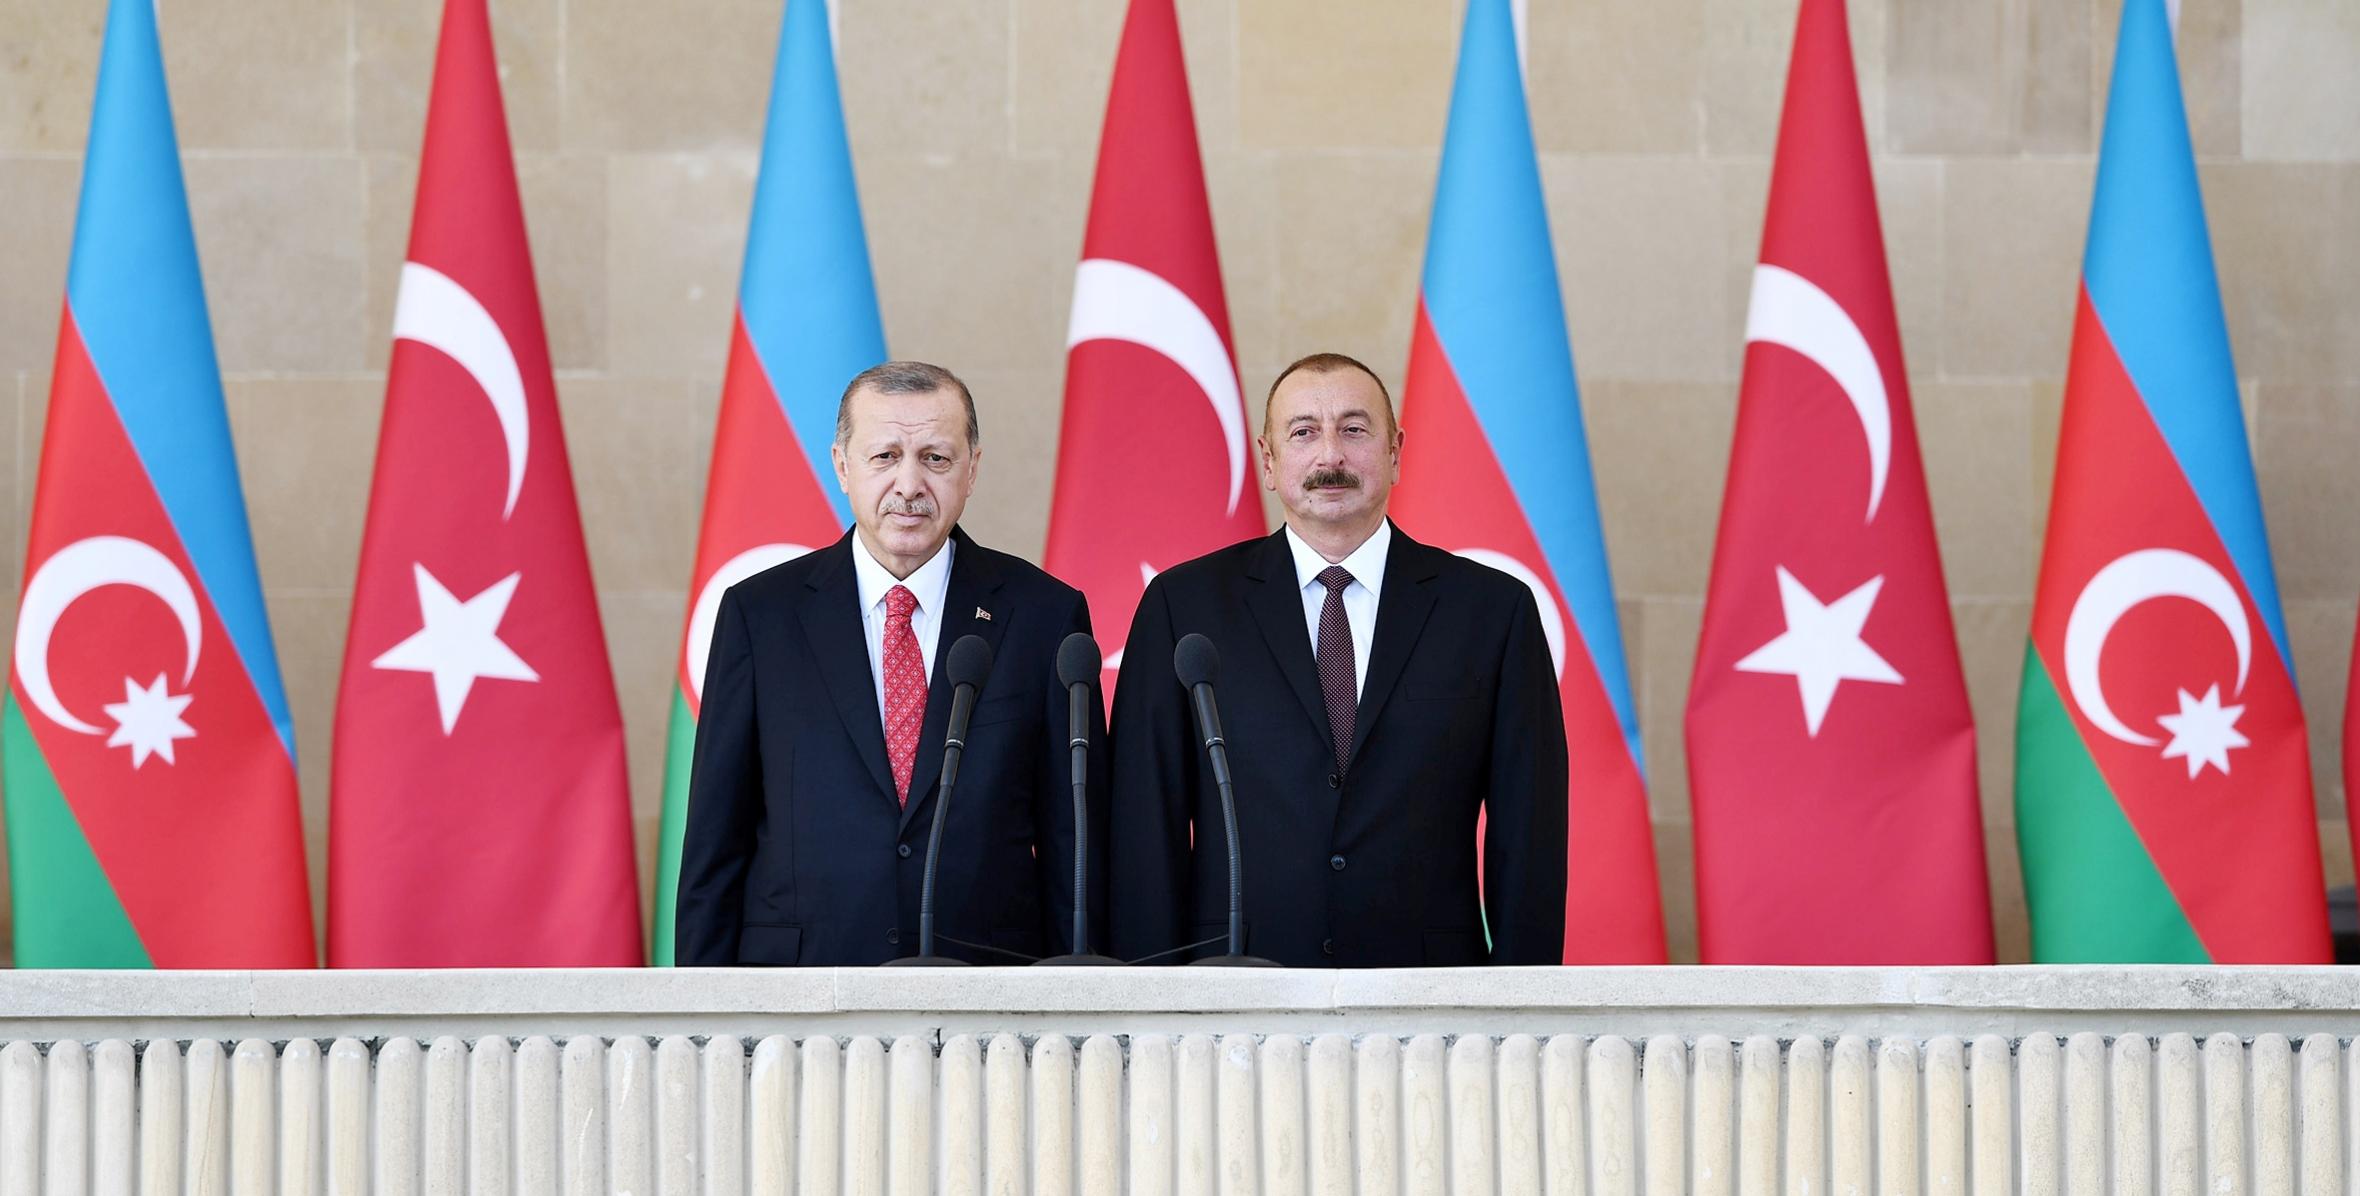 Ильхам Алиев и  Реджеп Тайип Эрдоган  приняли участие в параде посвященный 100-летию освобождения города Баку